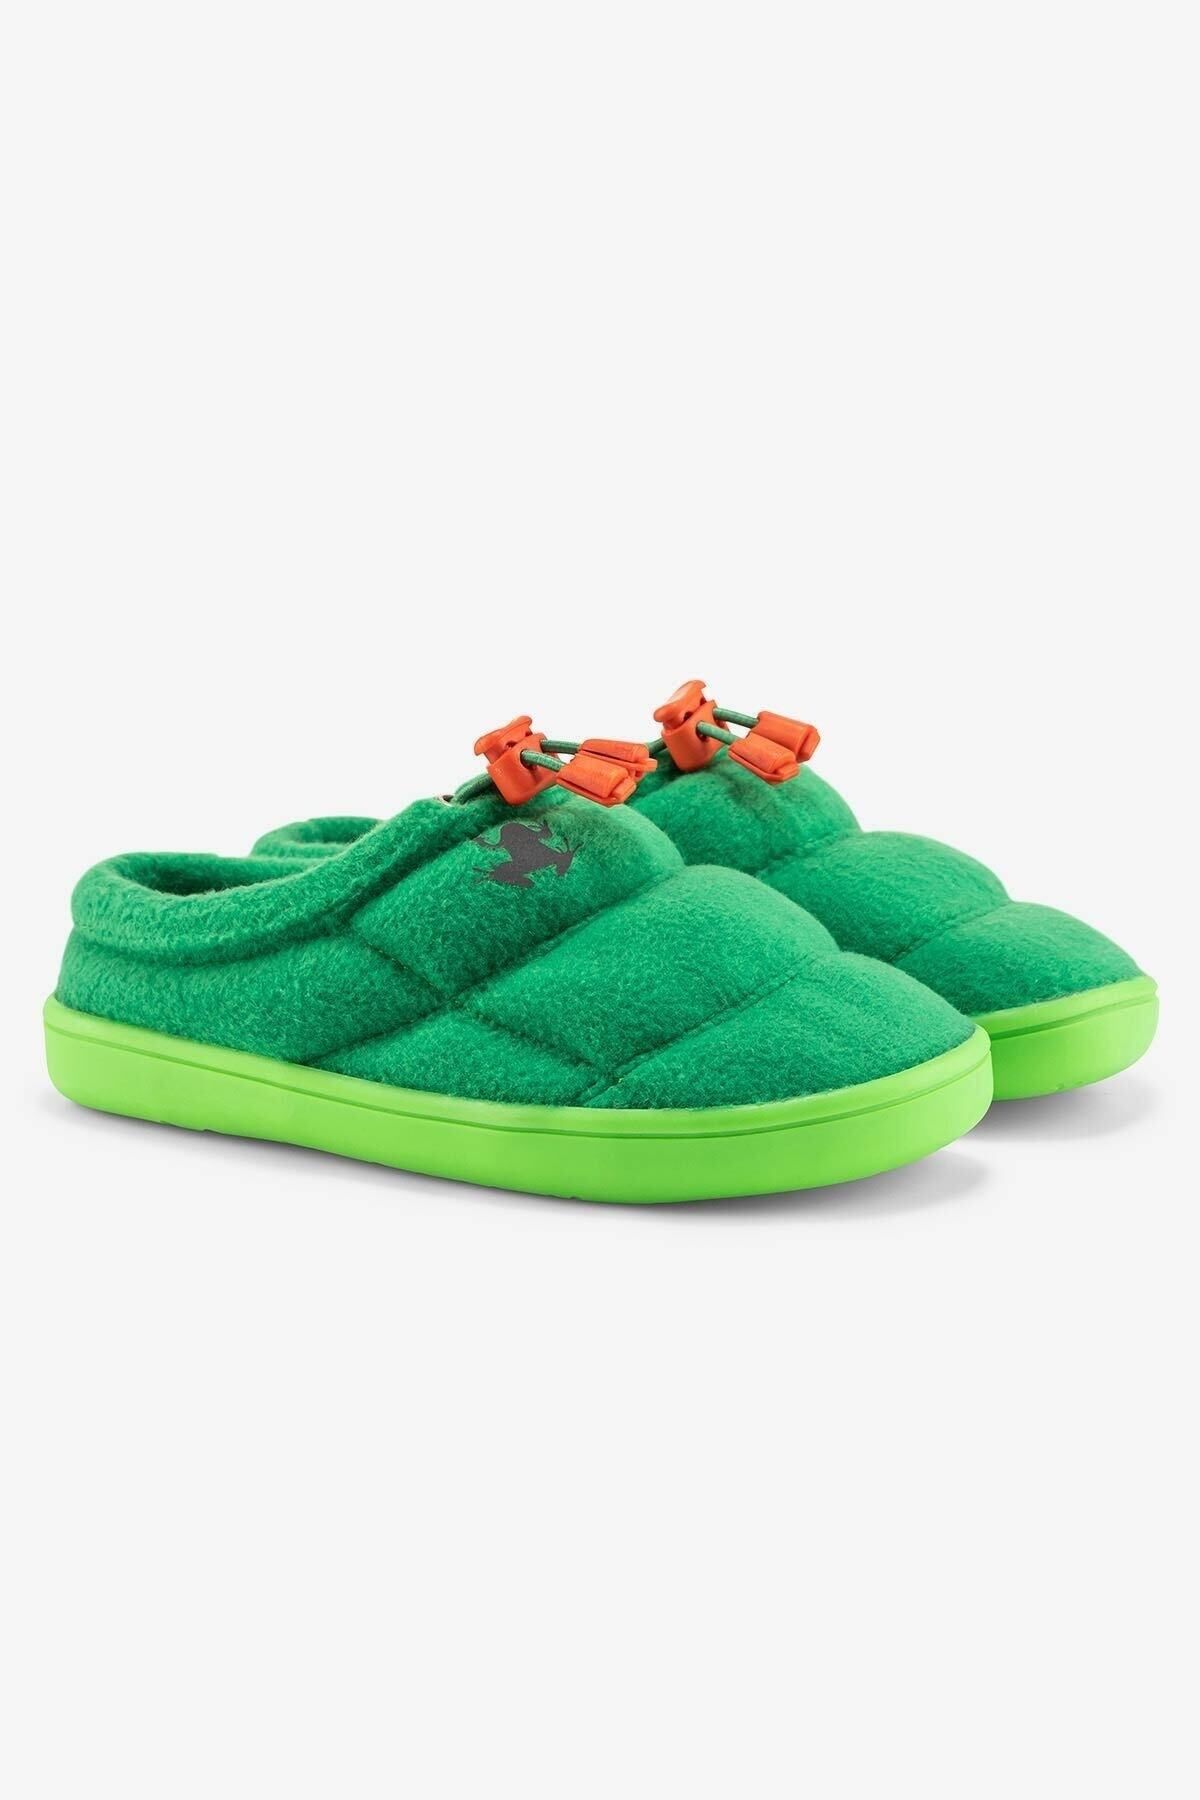 HOPFRÖG Hoppuff Polar Yeşil Barefoot Çocuk Ayakkabı